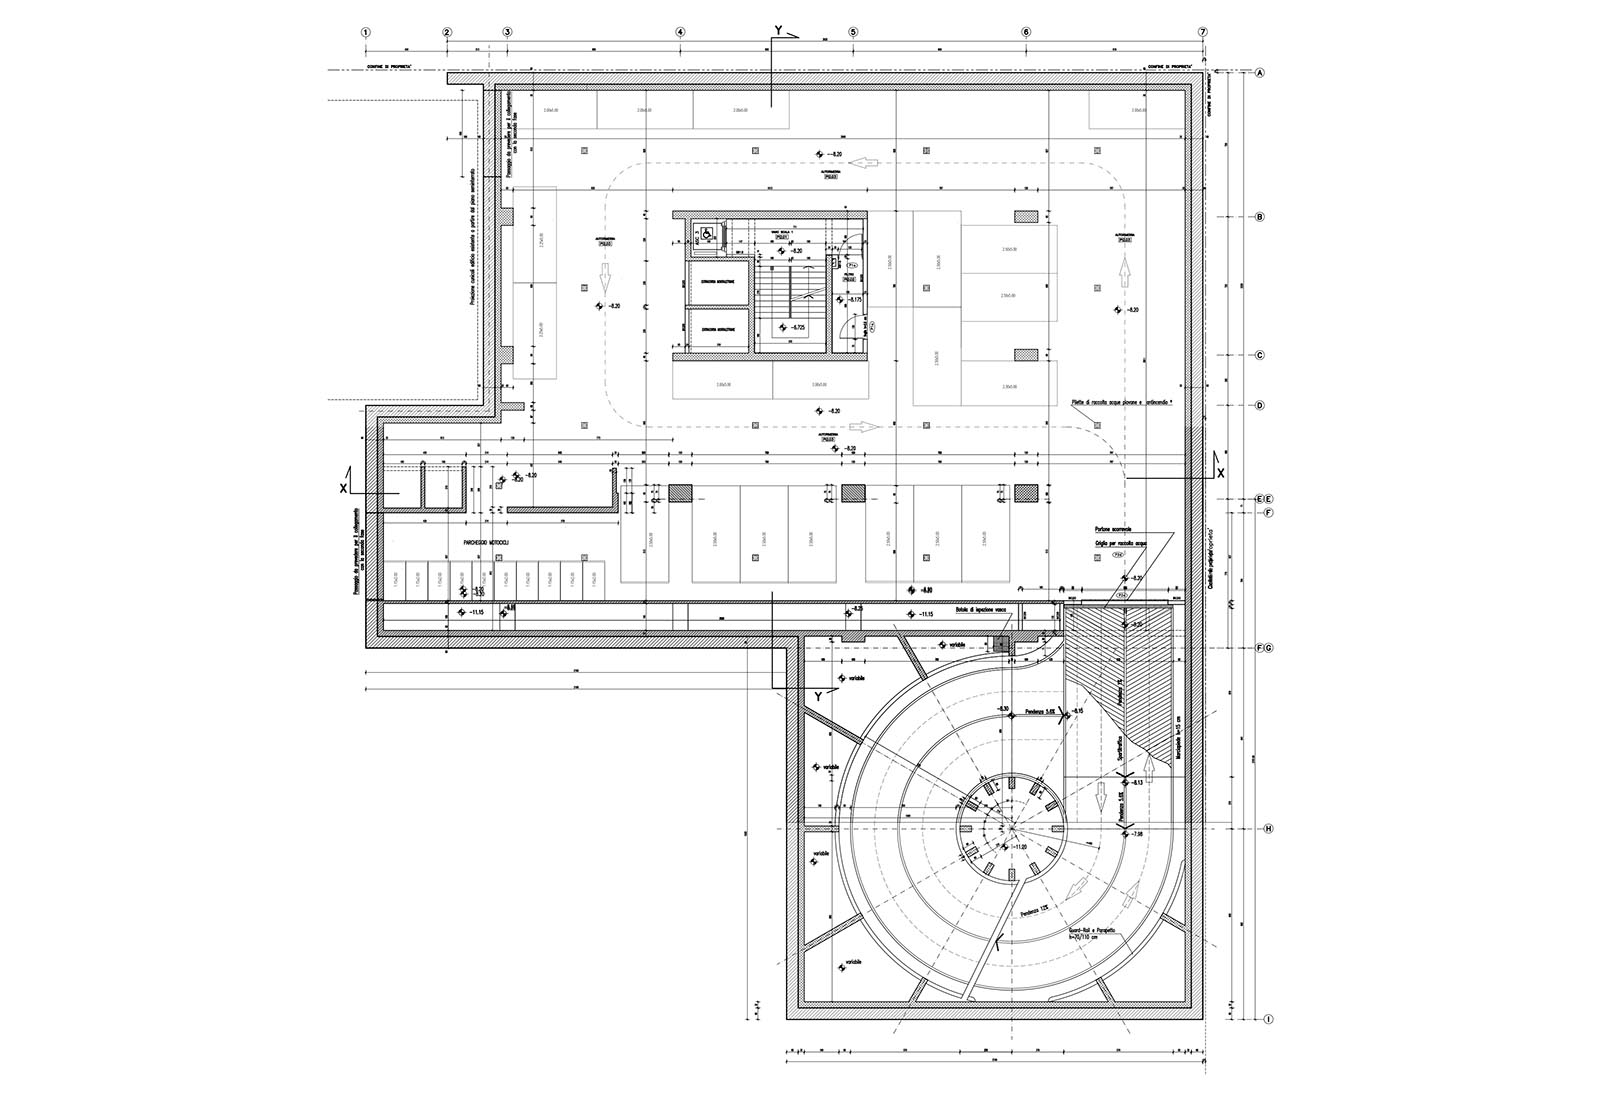 Besta hospital in Milan - 2nd floor underground plan